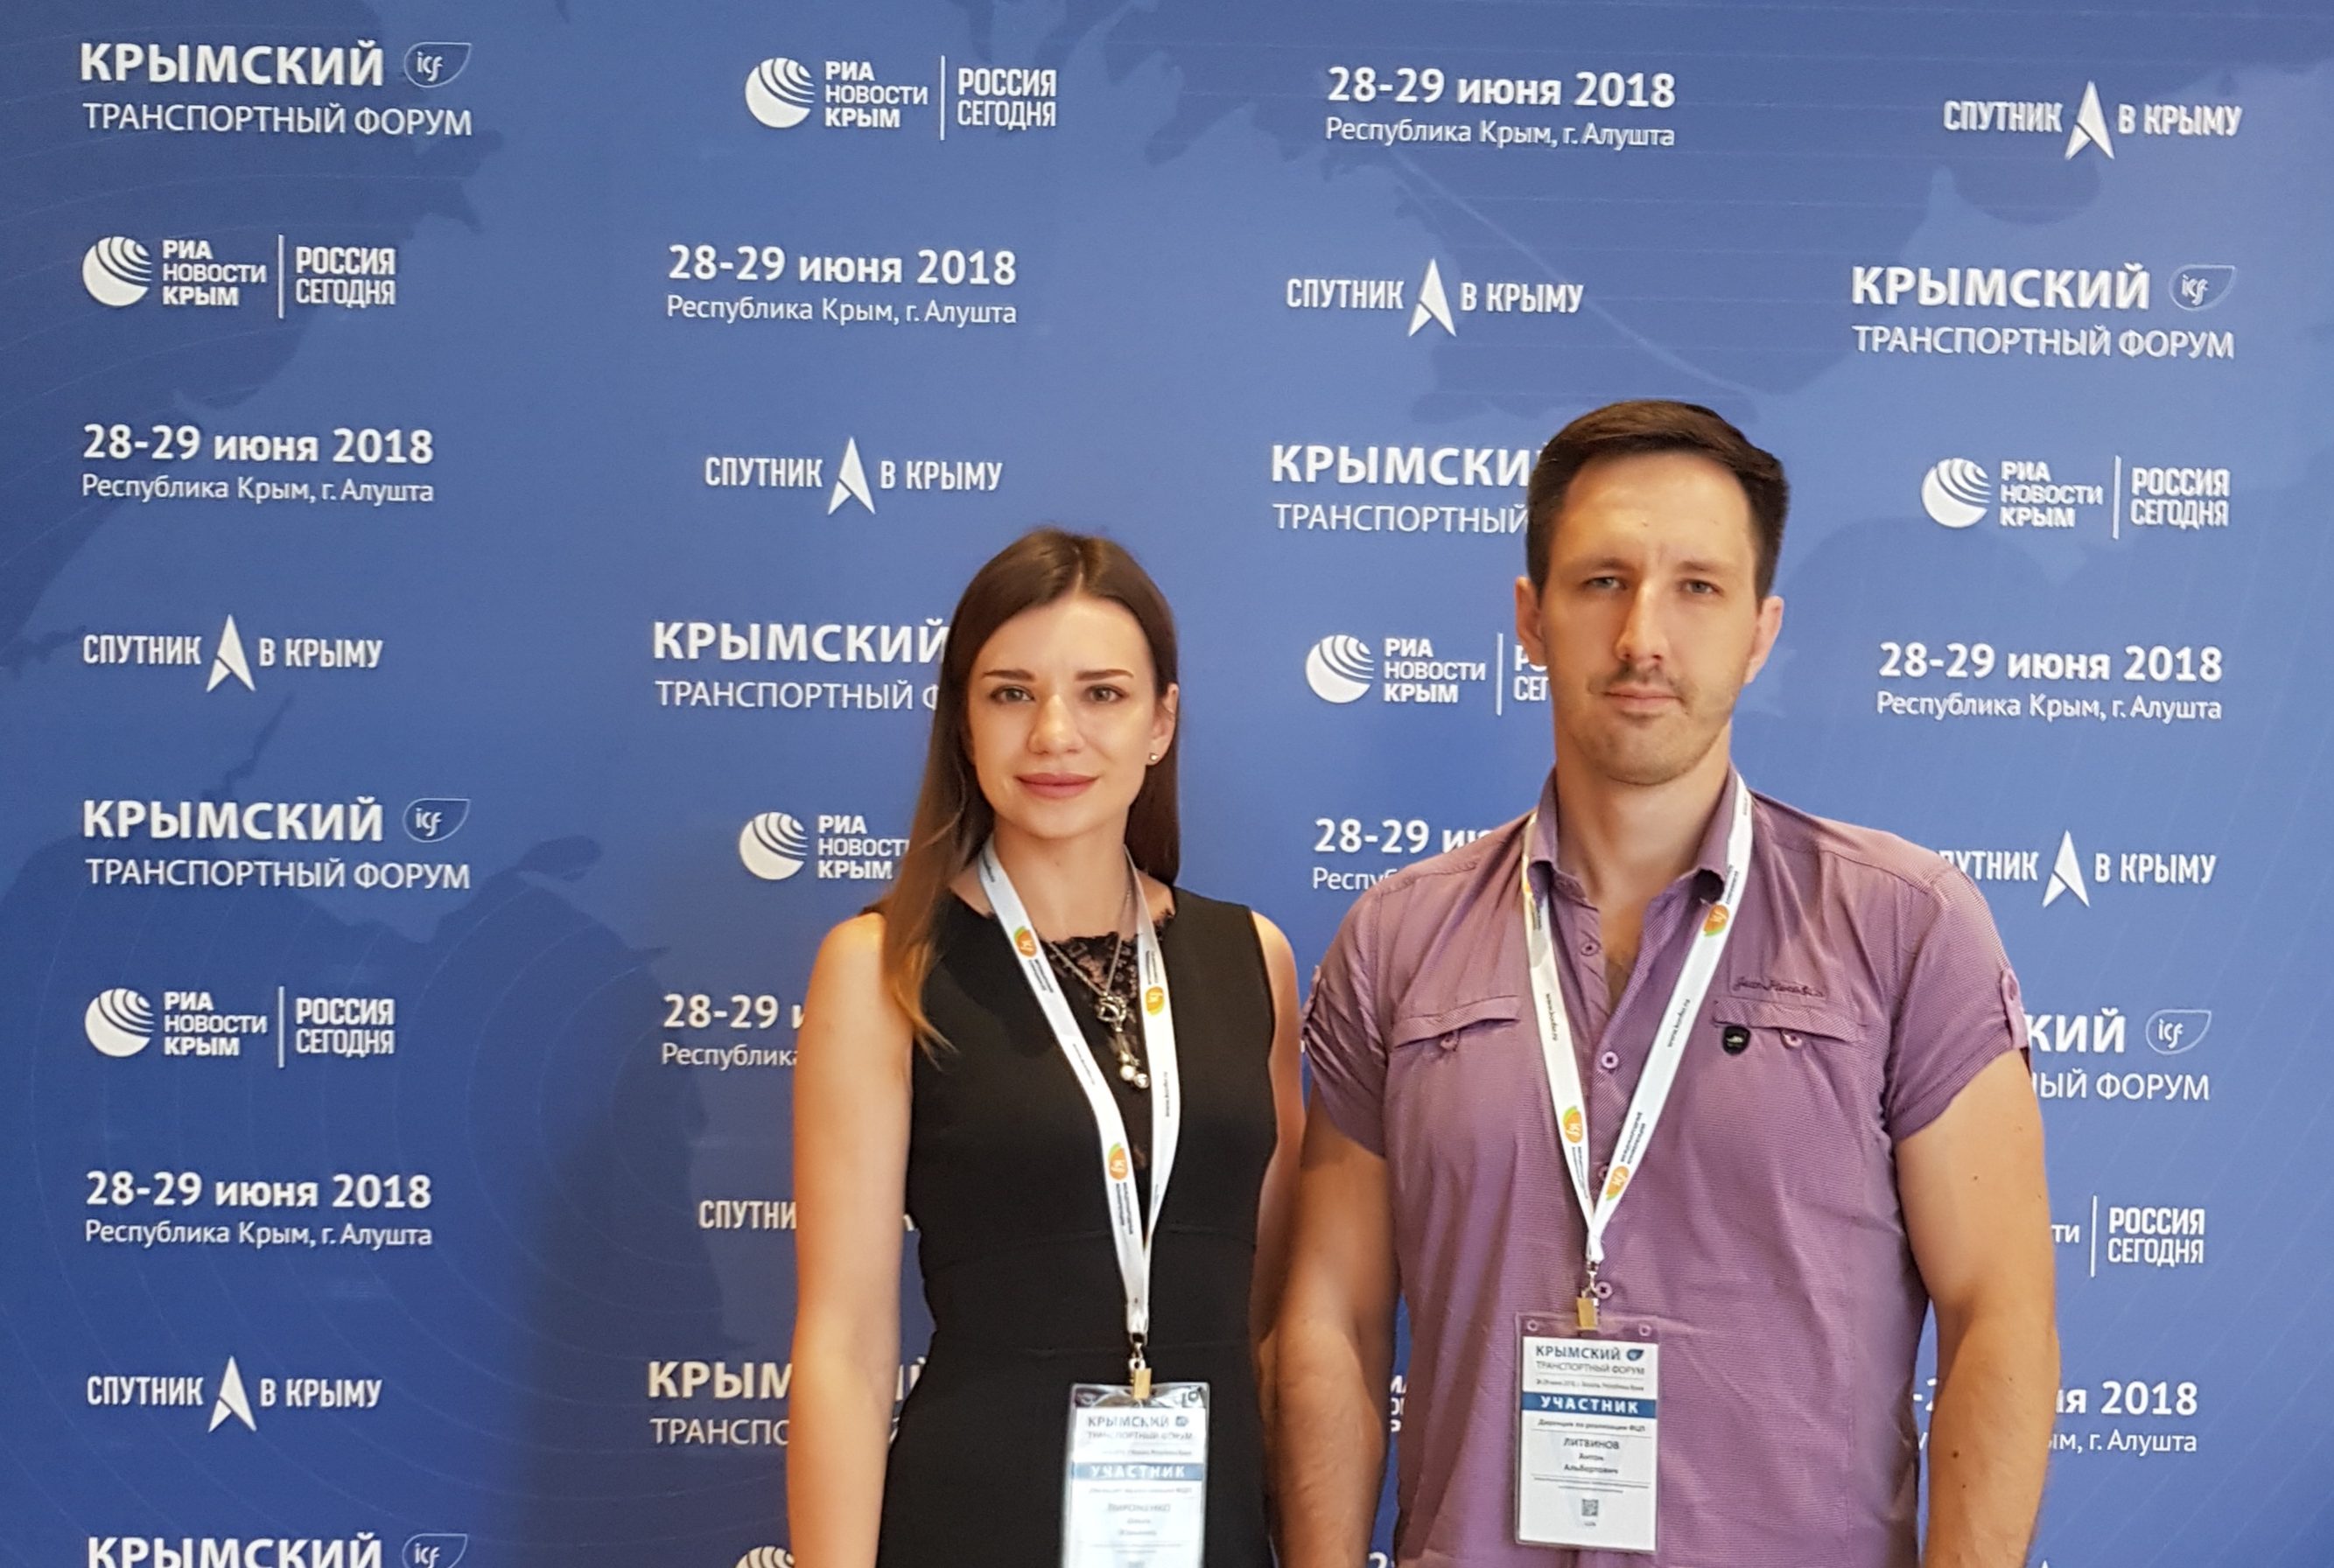 Сотрудники Дирекции приняли участие в<br>V Крымском транспортном форуме